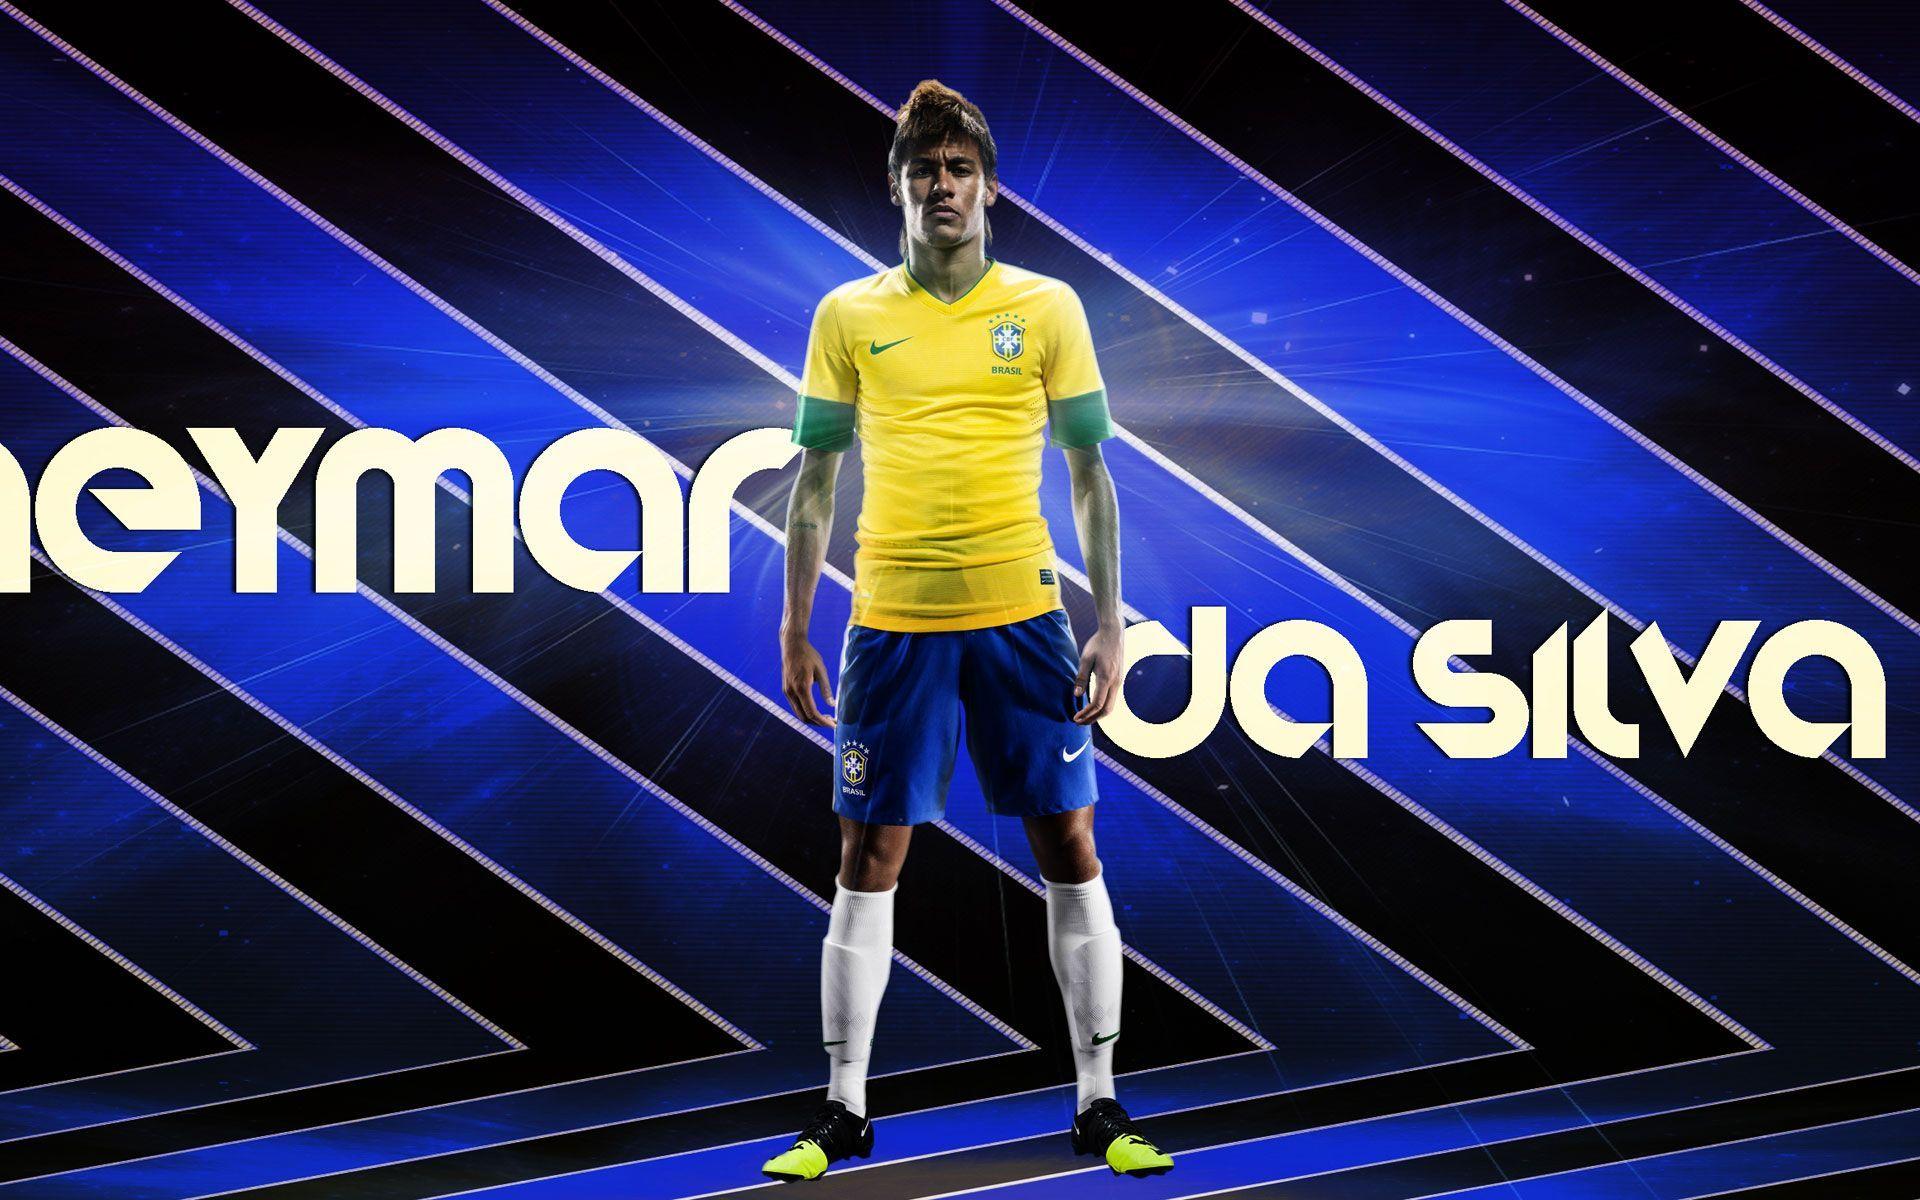 Neymar Da Silva Wallpaper HD. TanukinoSippo